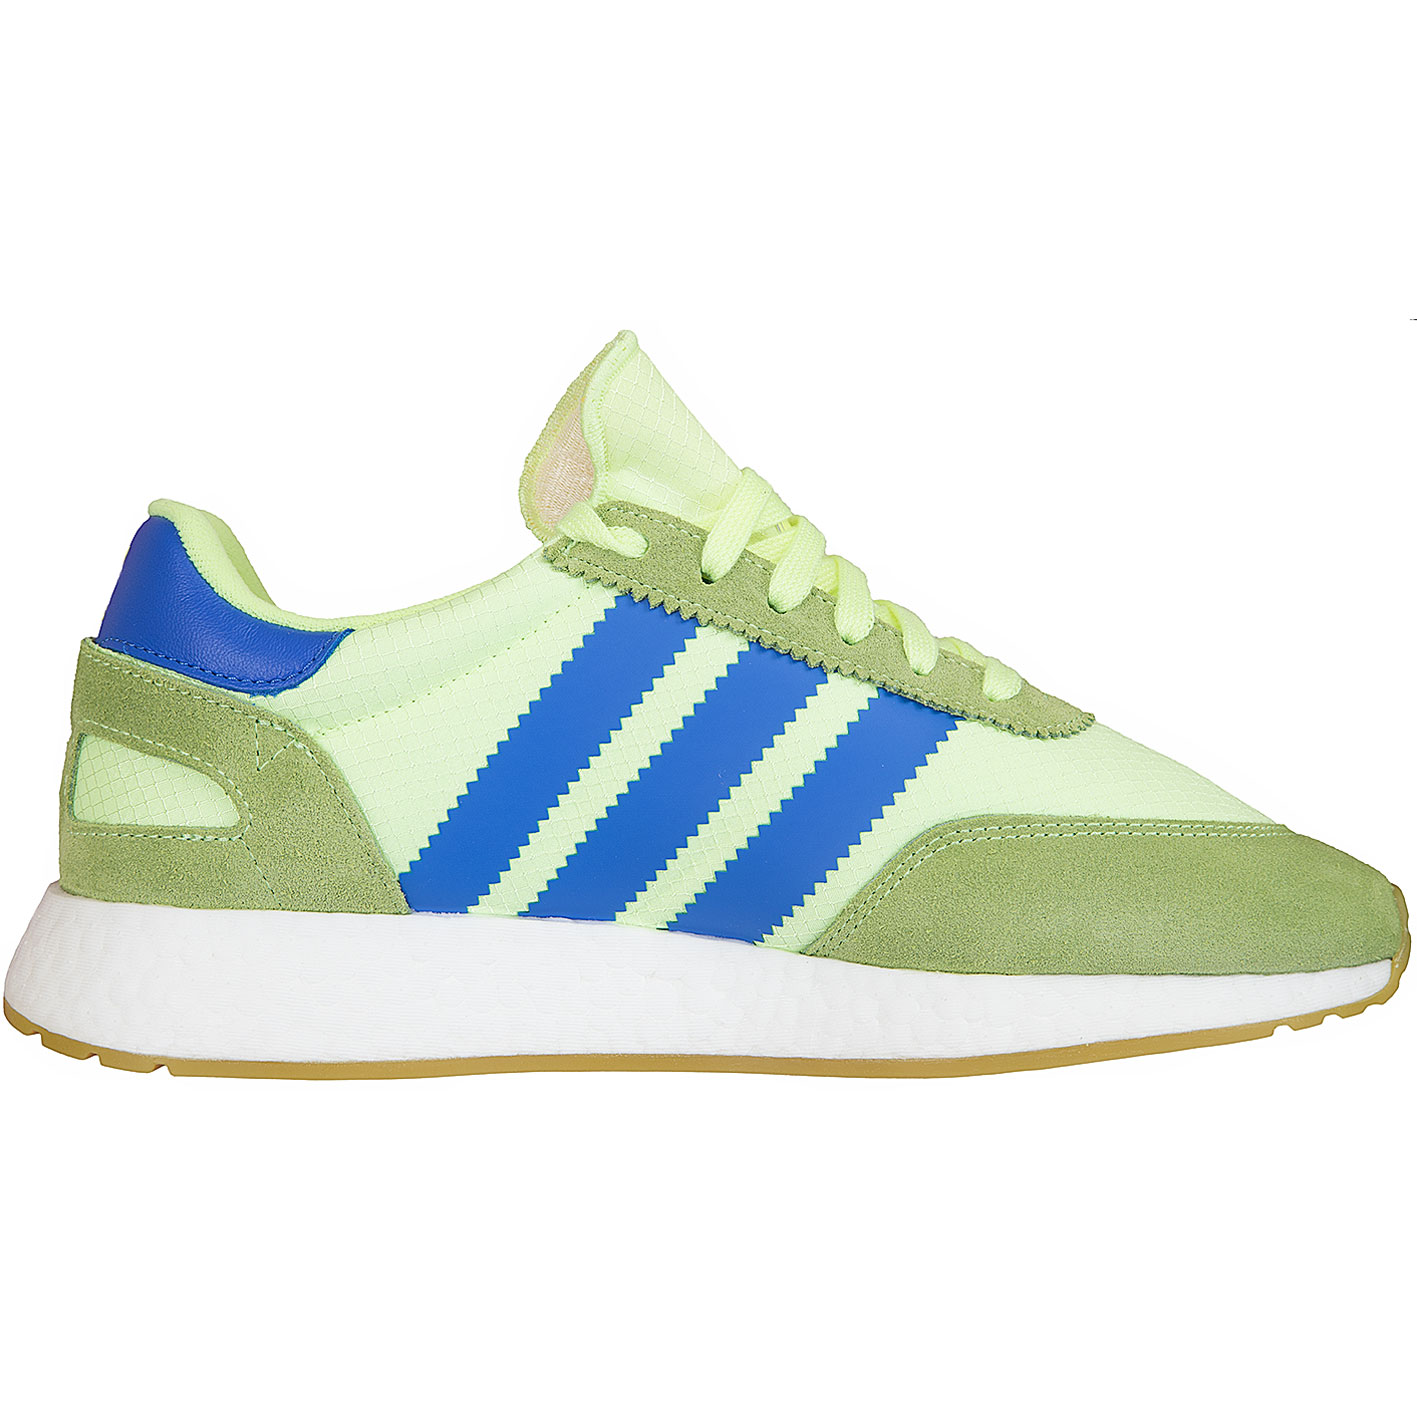 ☆ Adidas Originals Sneaker I-5923 grün/blau - hier bestellen!